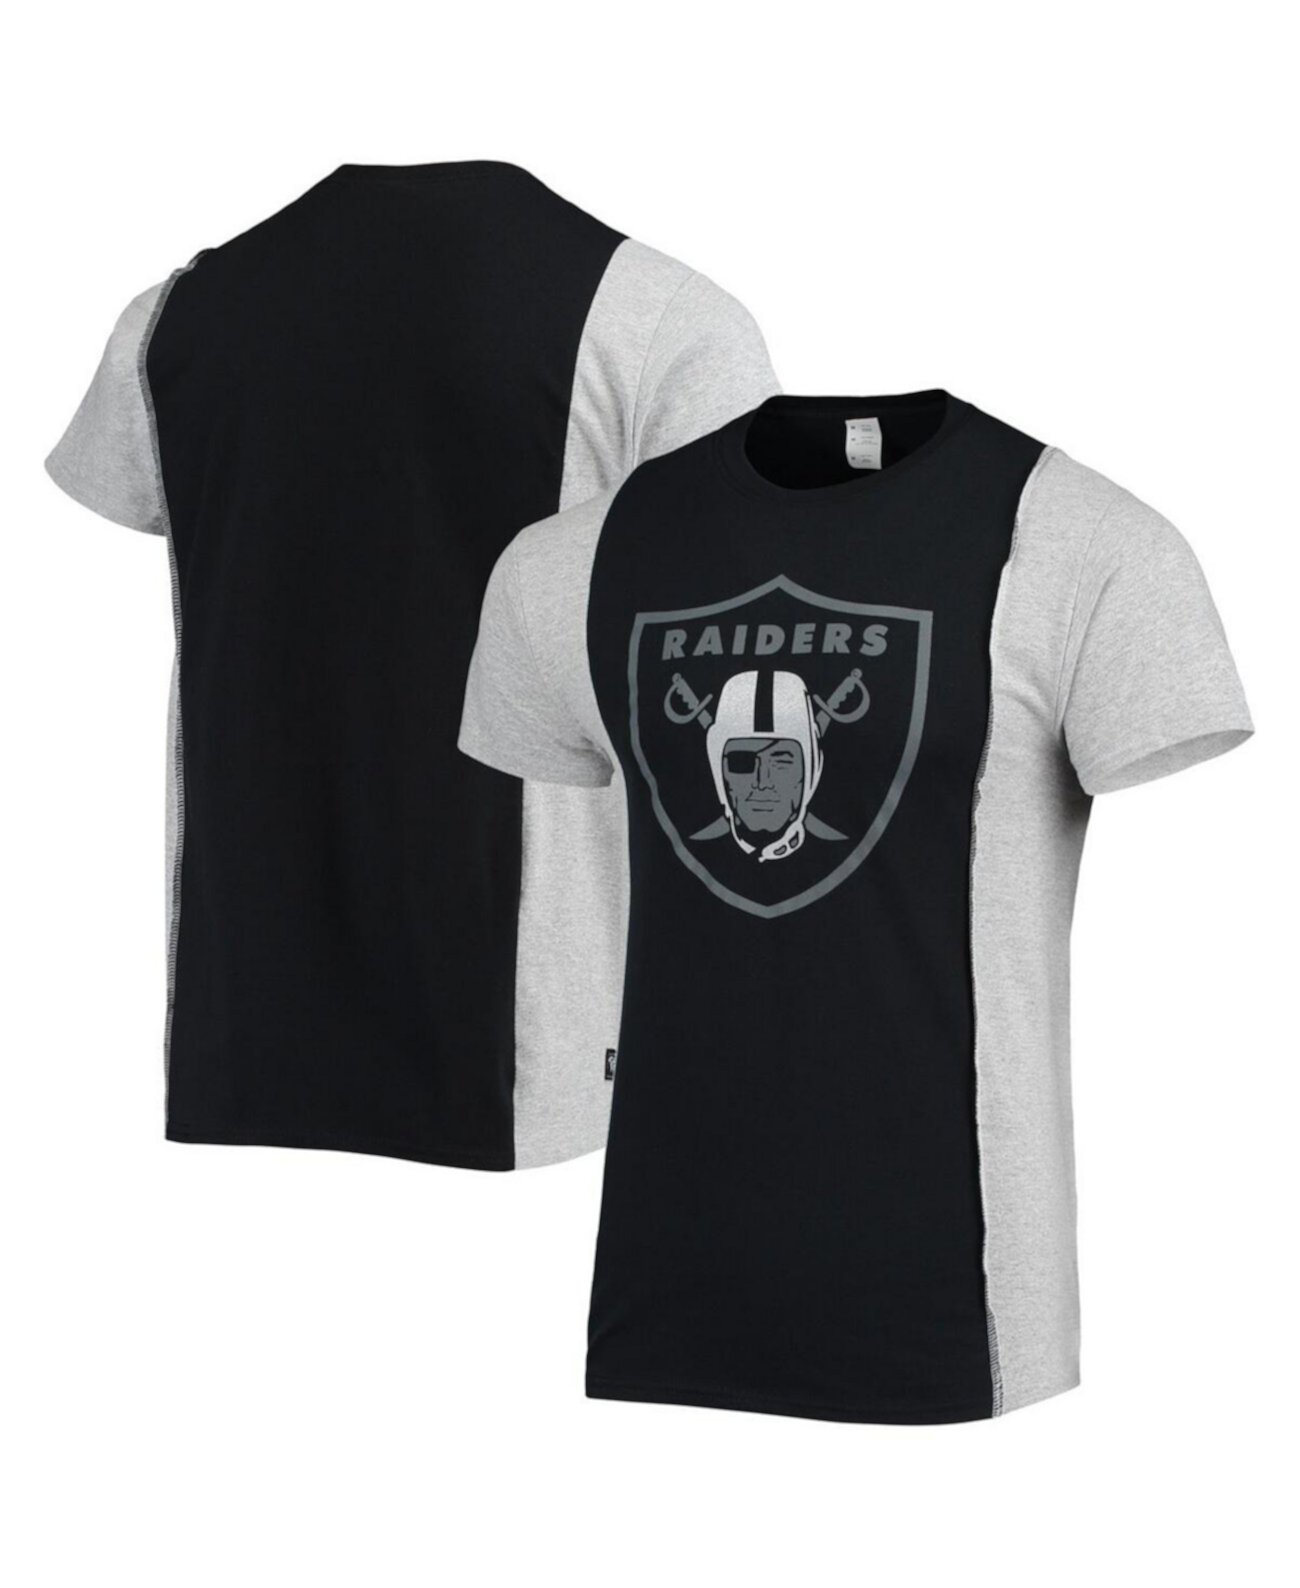 Мужская футболка с разрезом Las Vegas Raiders черного, серого меланжевого цвета Refried Apparel